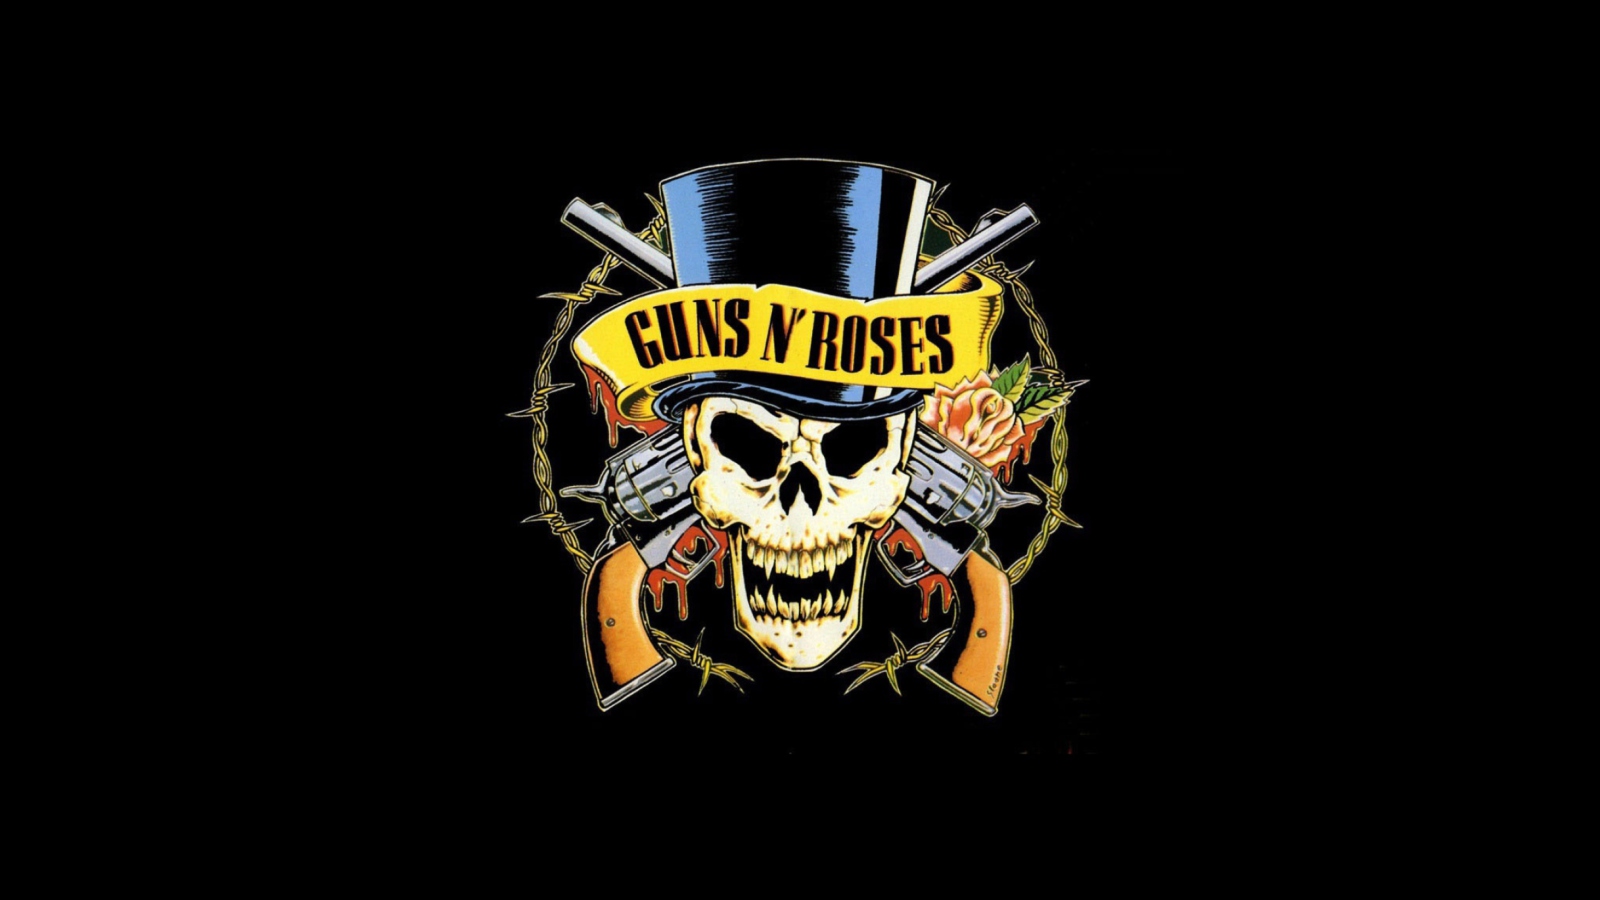 Fondo de pantalla Guns'n'roses Logo 1600x900